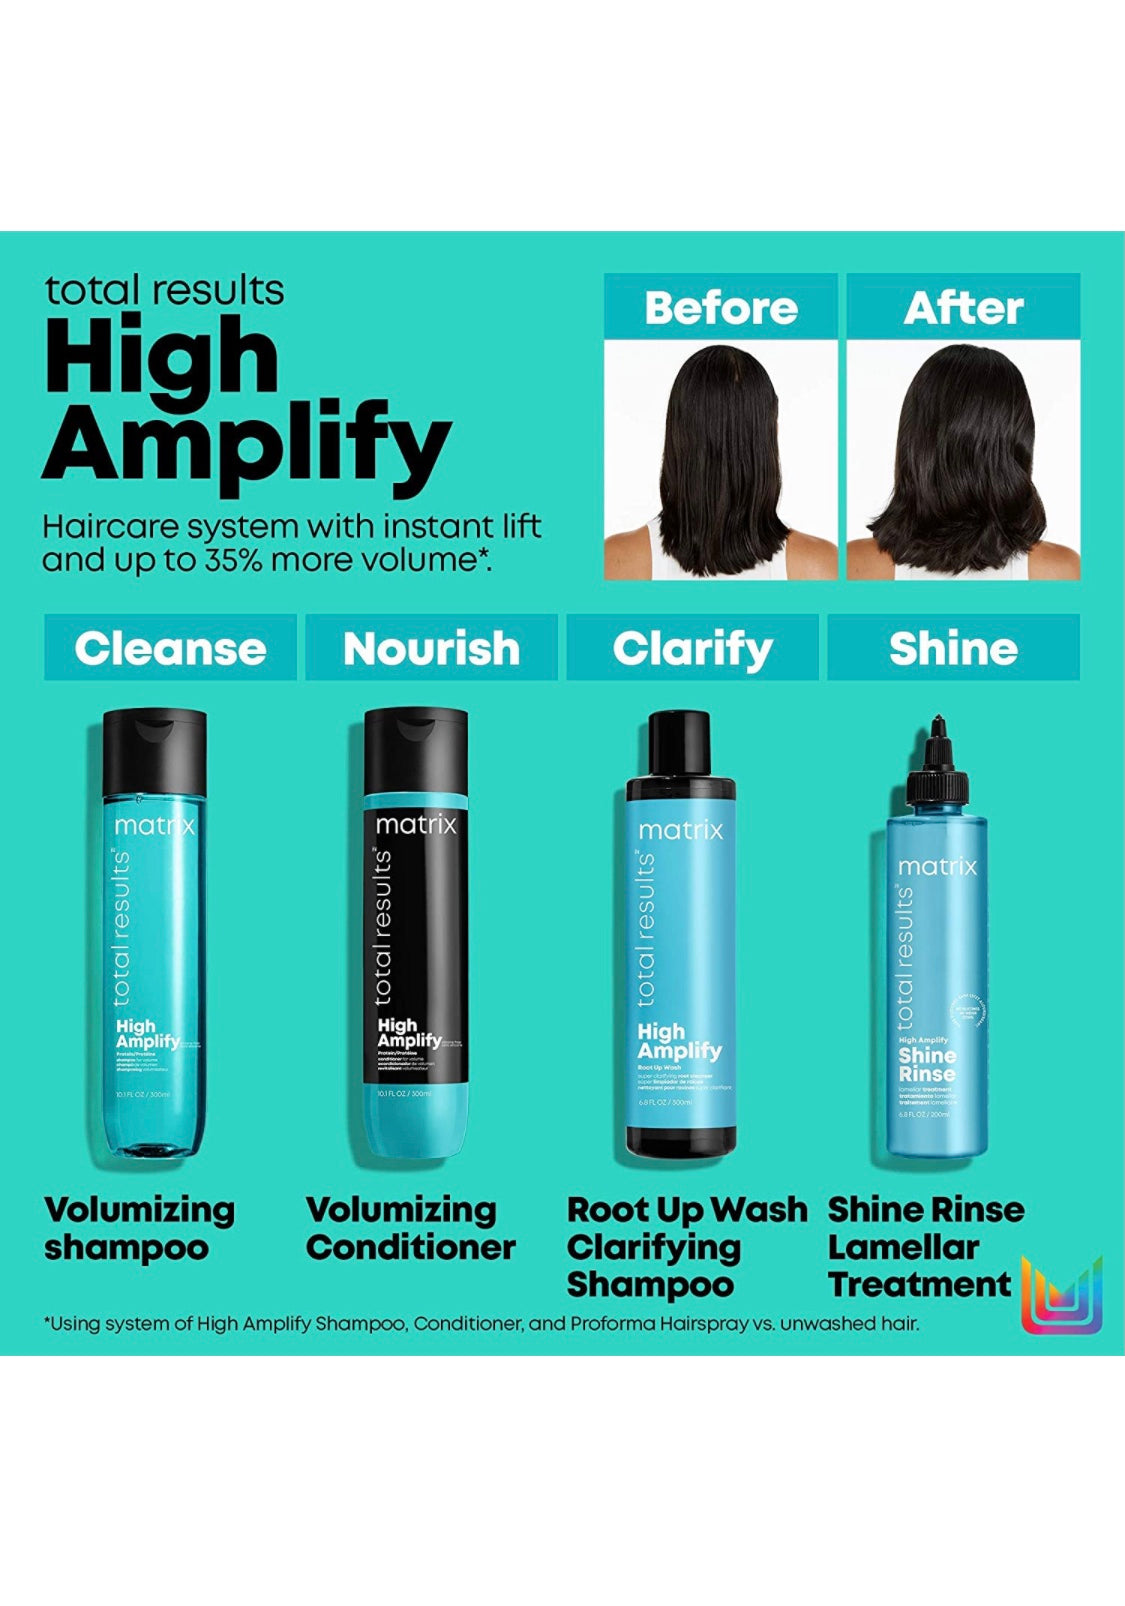 Matrix - High amplify shampoo 10.1 fl. oz./ 300 ml